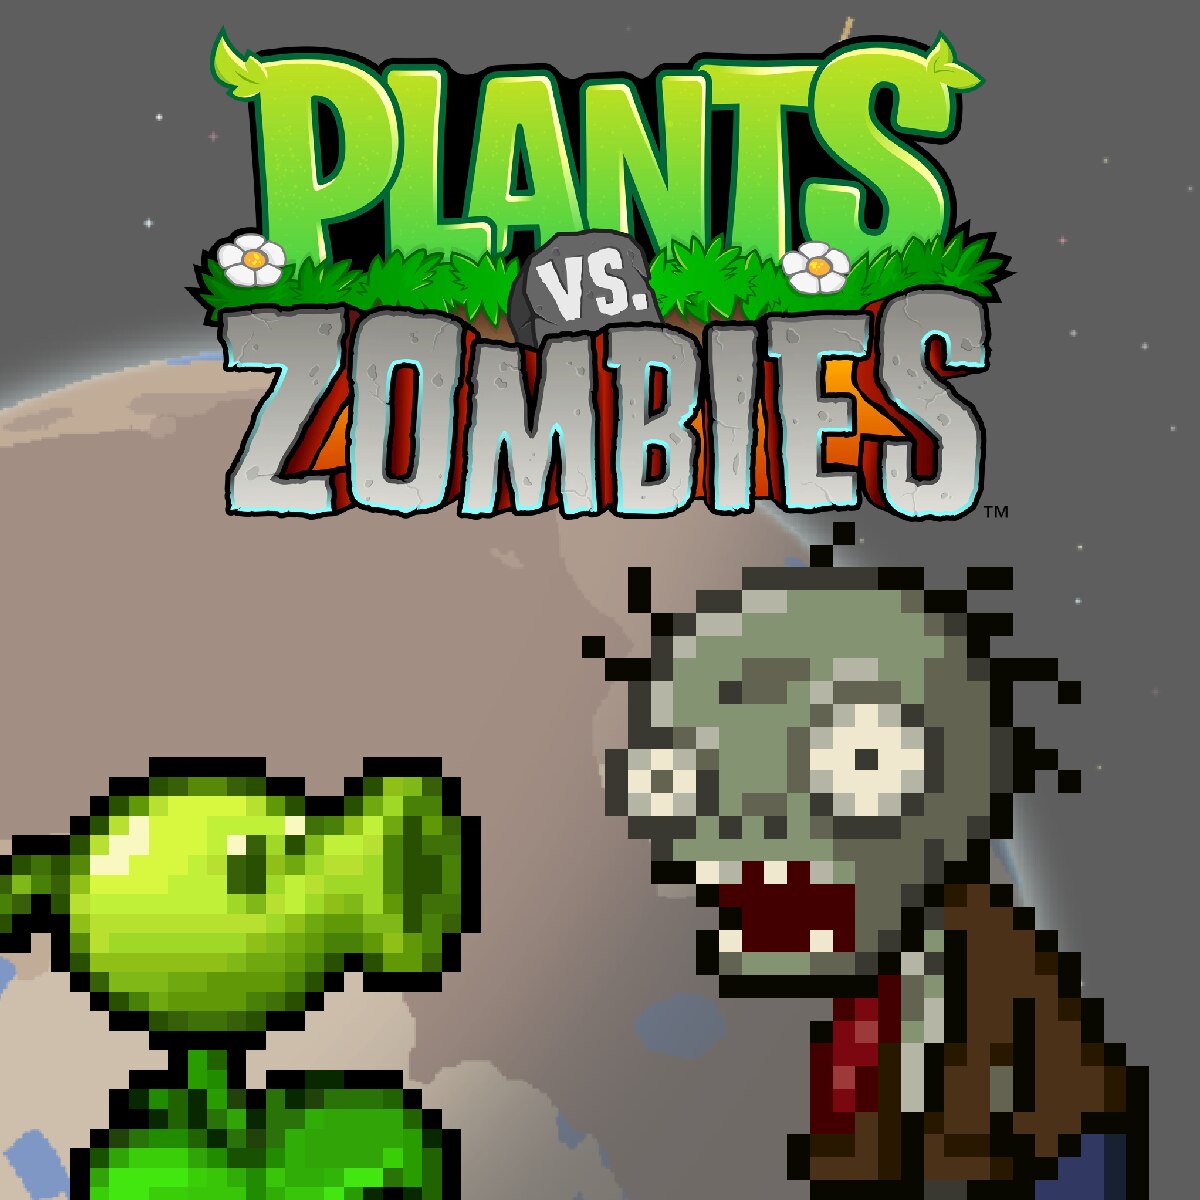 Steam Workshop::PvZ: Garden Warfare - Zombies